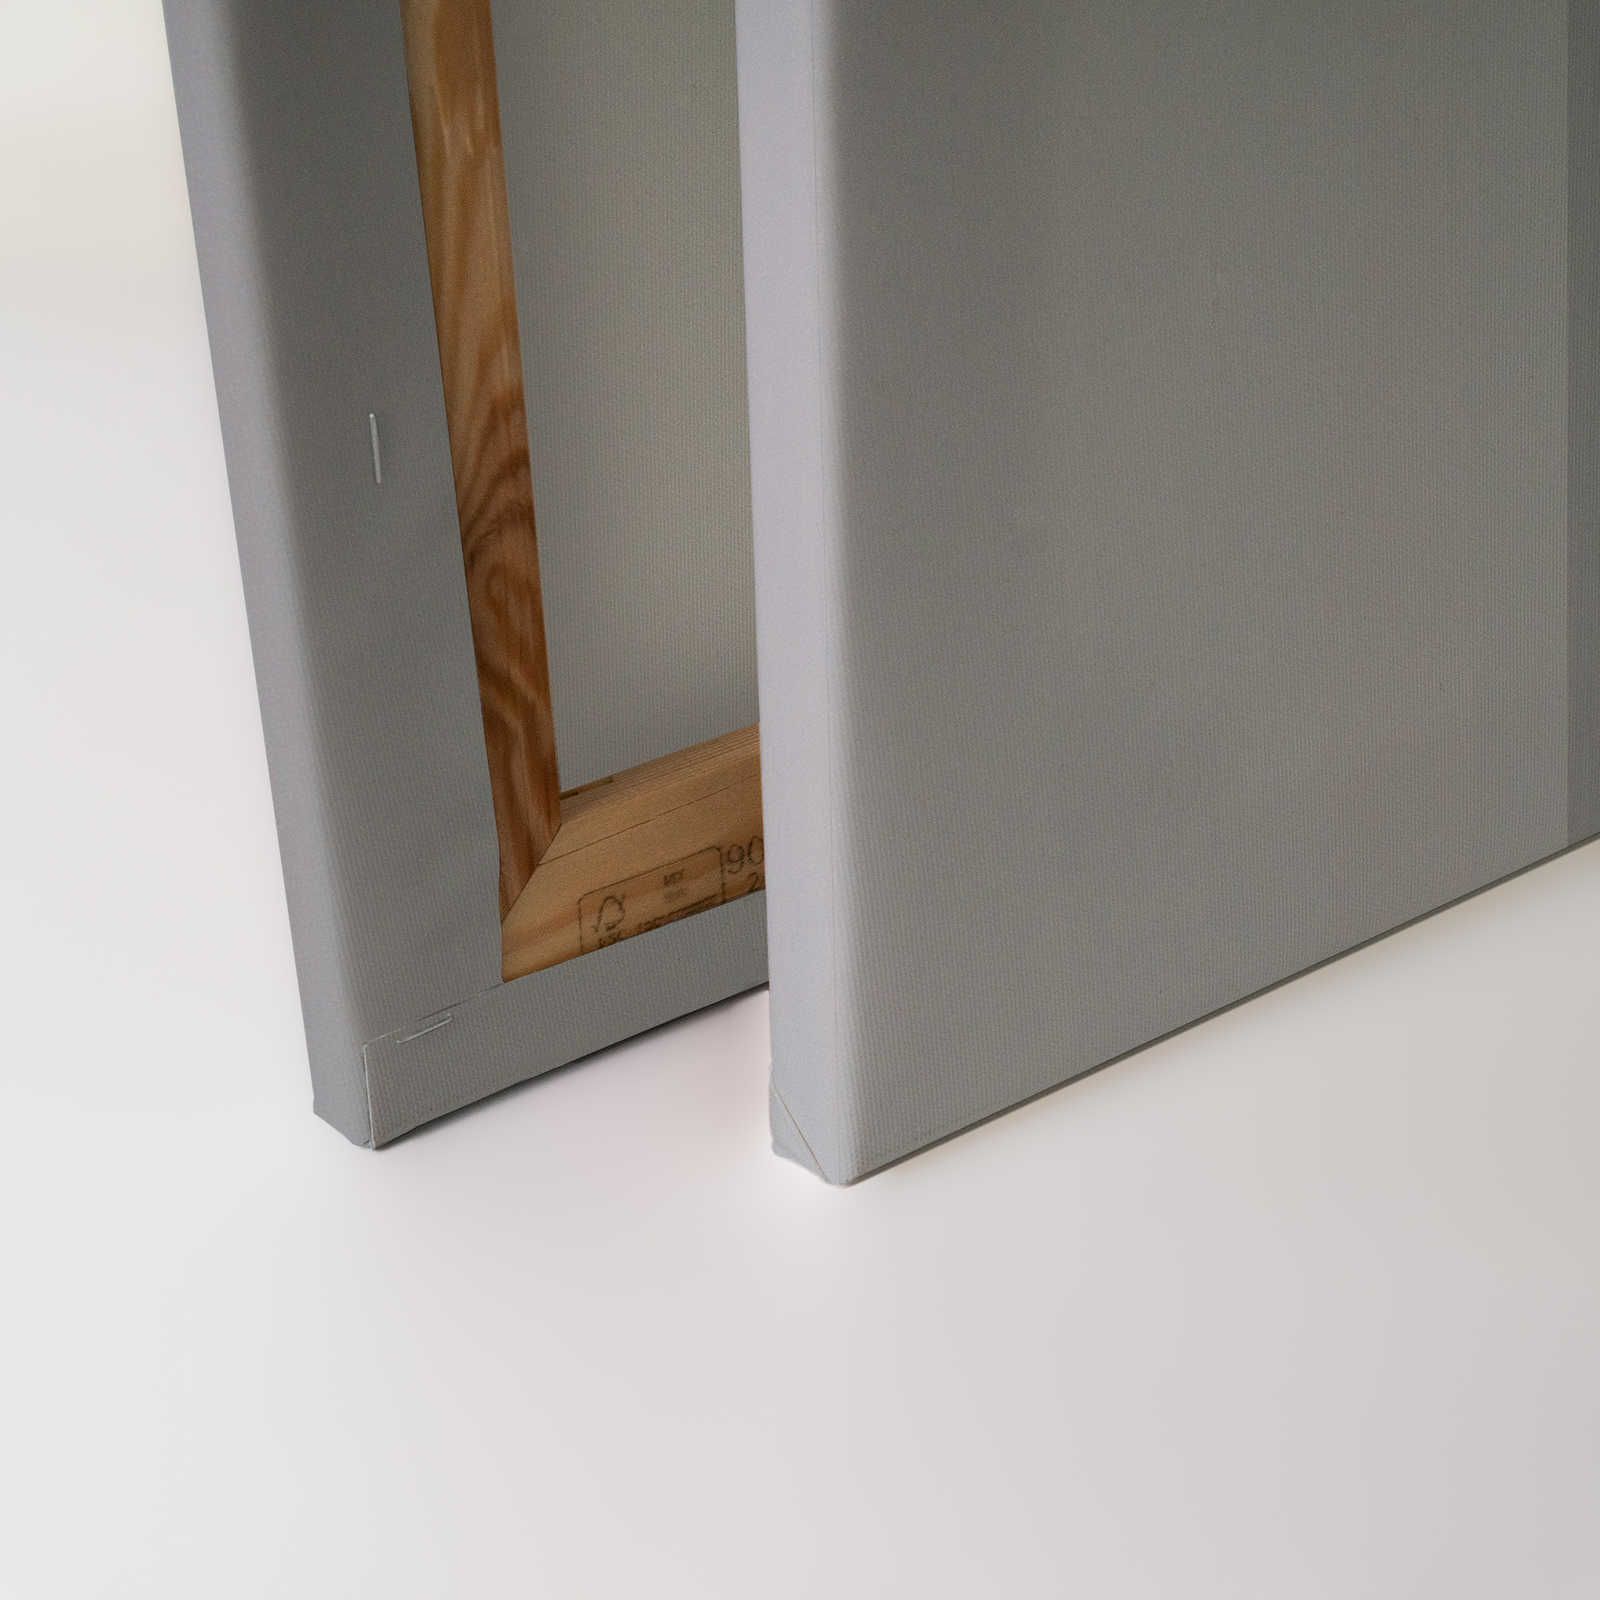             Detrás de la pared 1 - Lienzo 3D gris acero con diseño minimalista - 0,90 m x 0,60 m
        